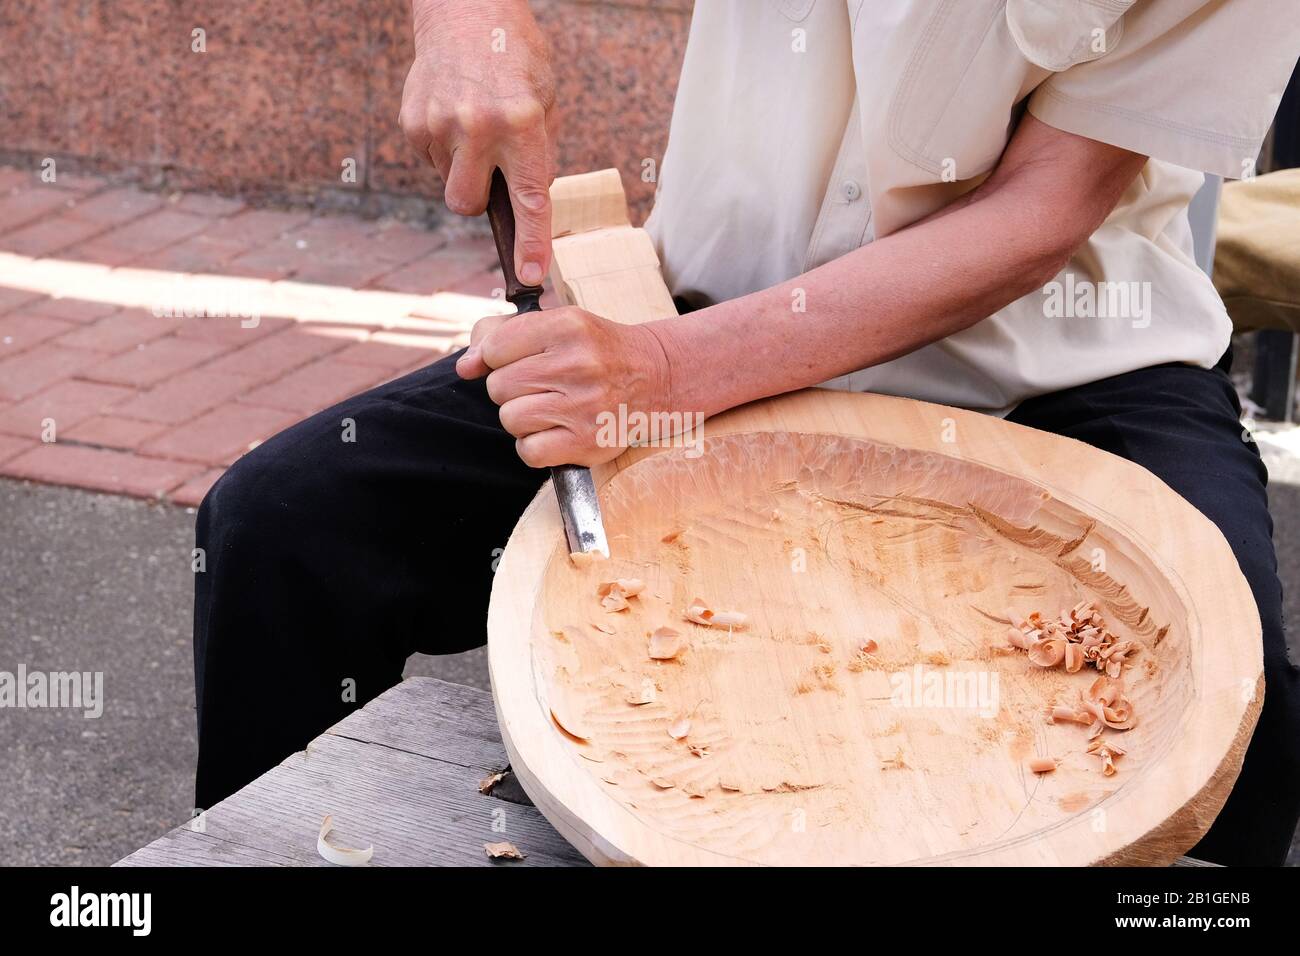 Sculpture en bois. Le charpentier professionnel sculpte l'artisanat en bois à l'aide d'un outil de travail du bois, les mains près. Concept de menuiserie et de savoir-faire. Banque D'Images